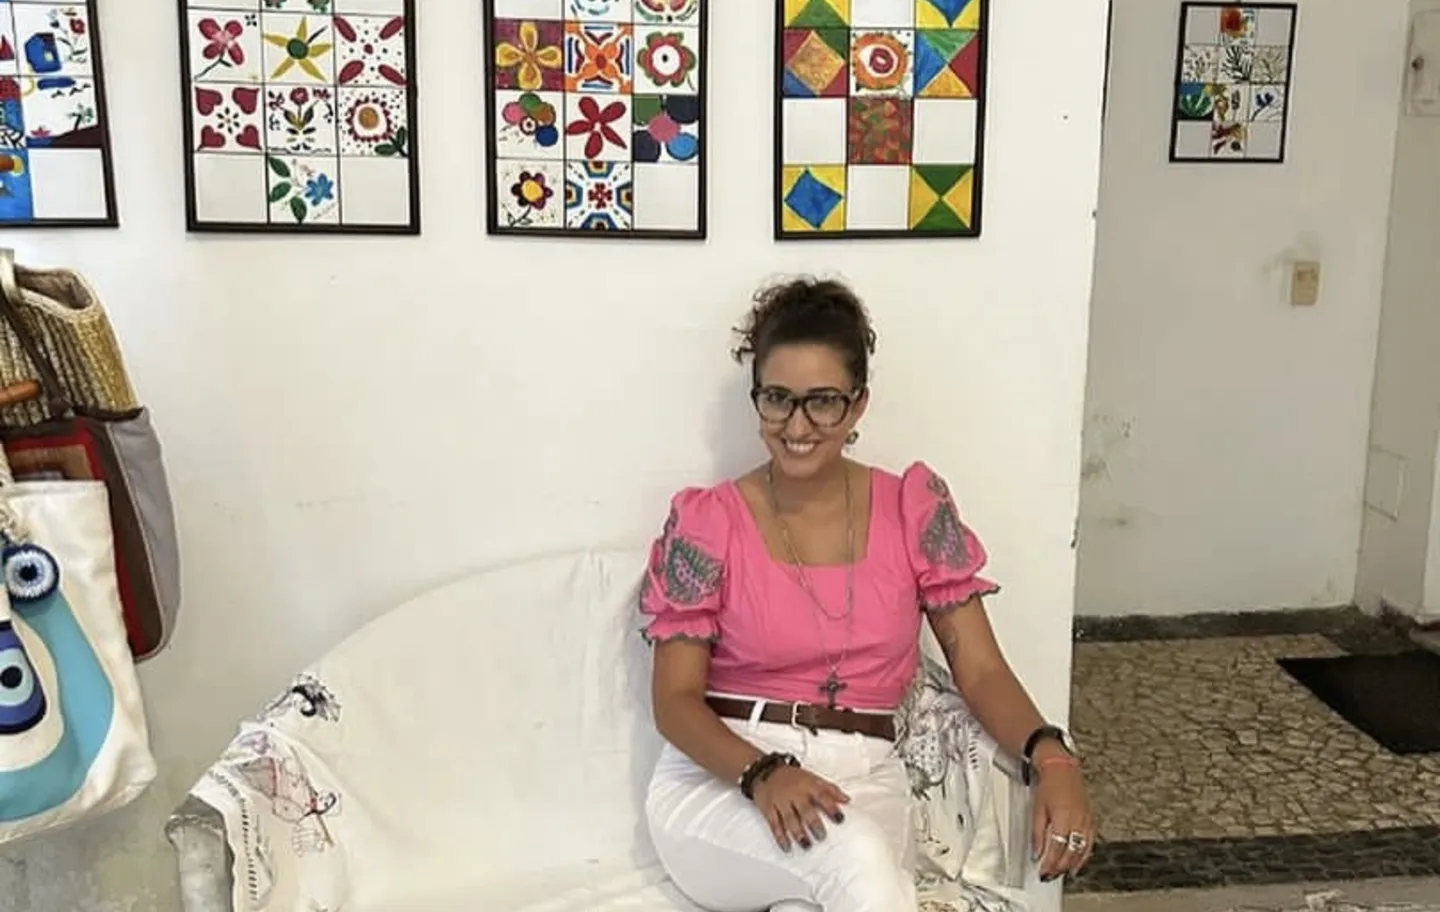 A advogada e artista plástica, Nathalia Baraúna é responsável pelo projeto